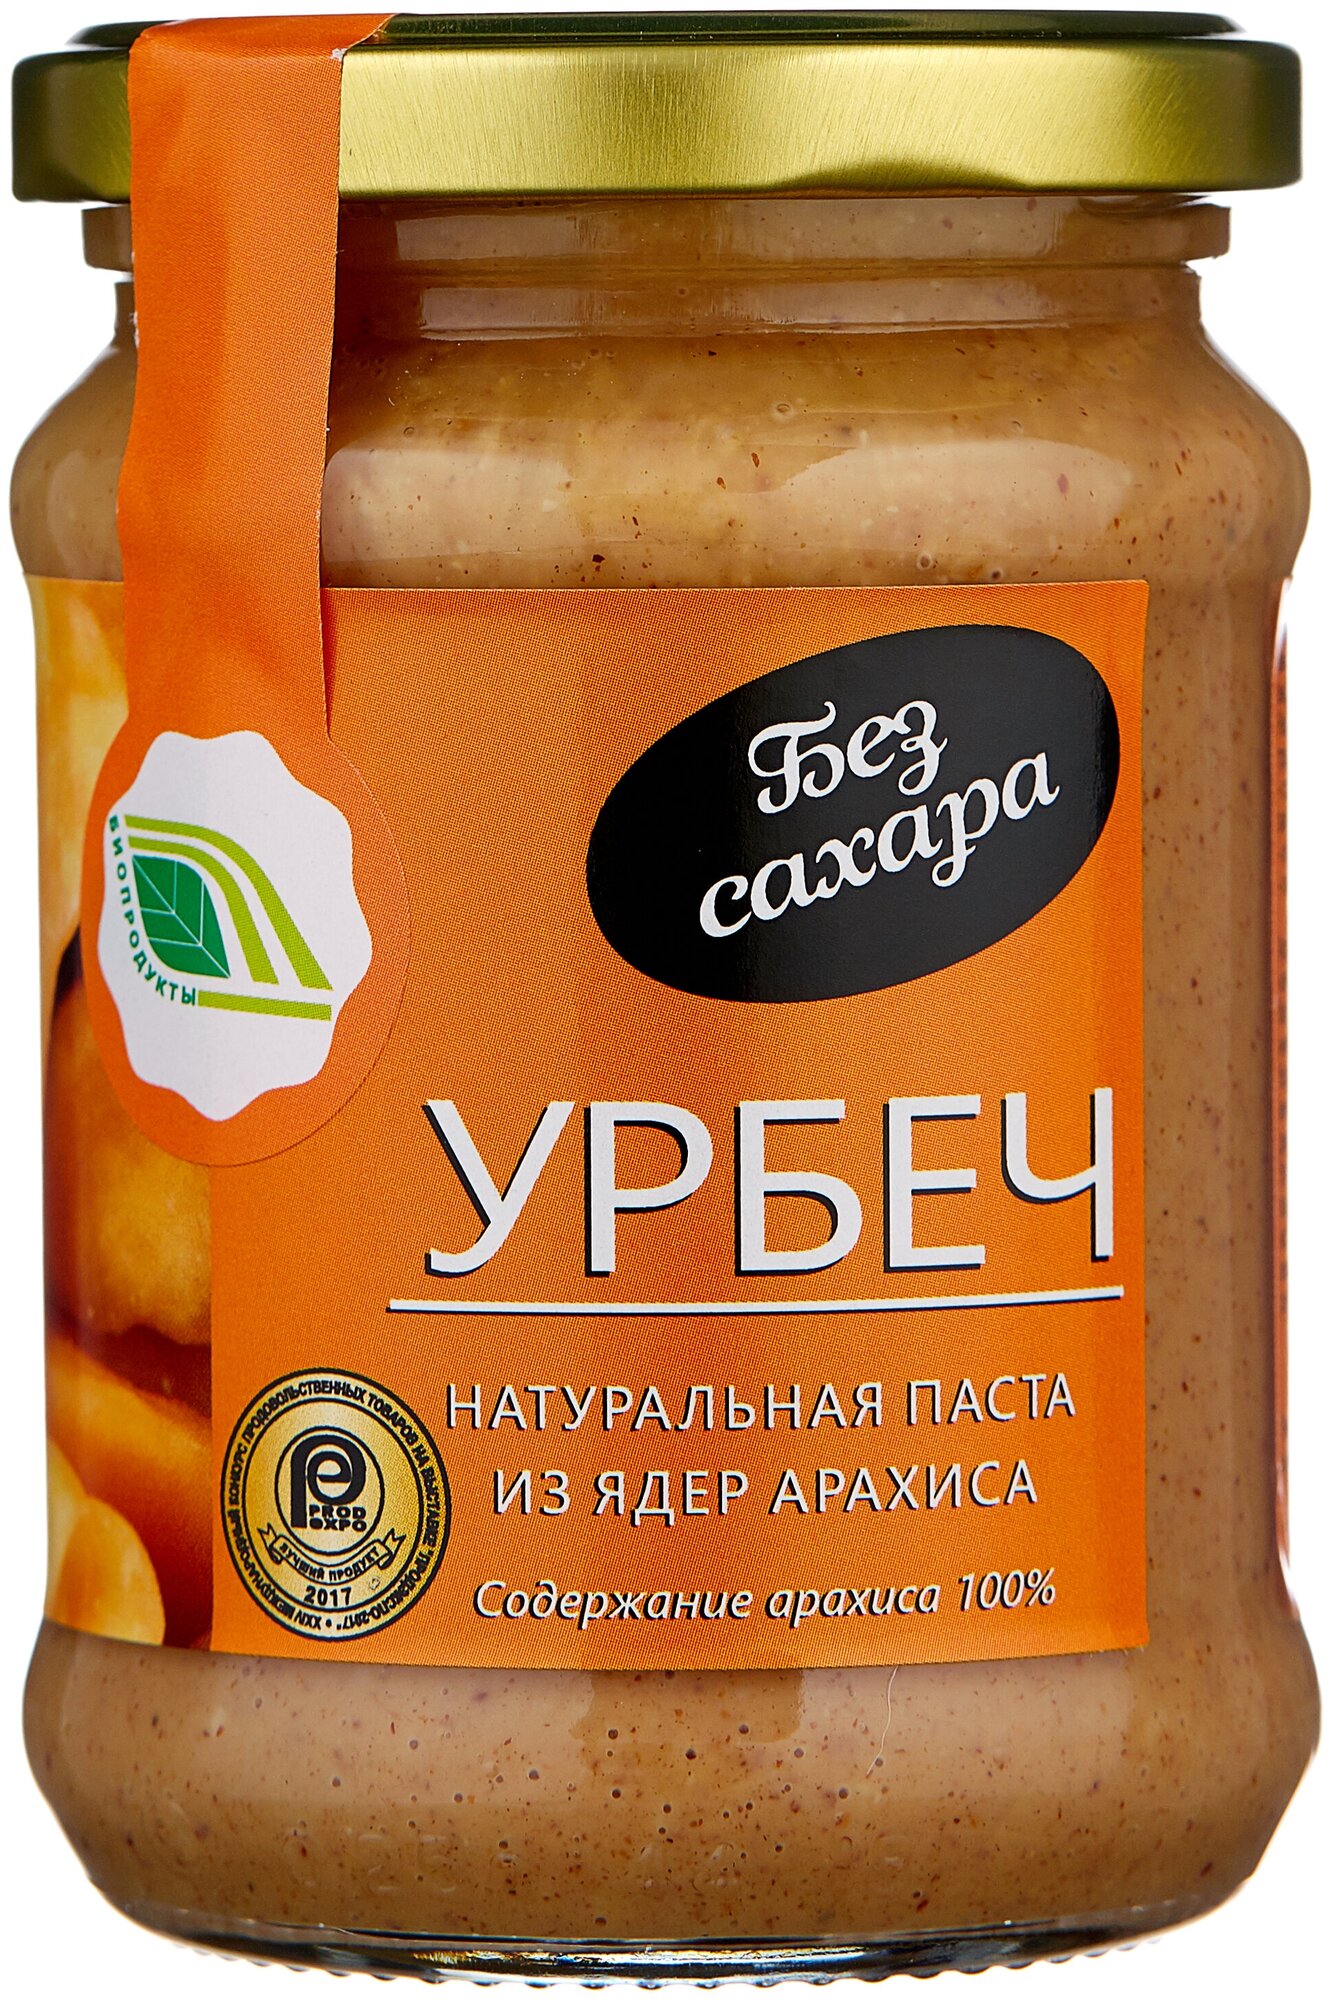 Натуральная паста Урбеч из ядер арахиса, 280 гр.